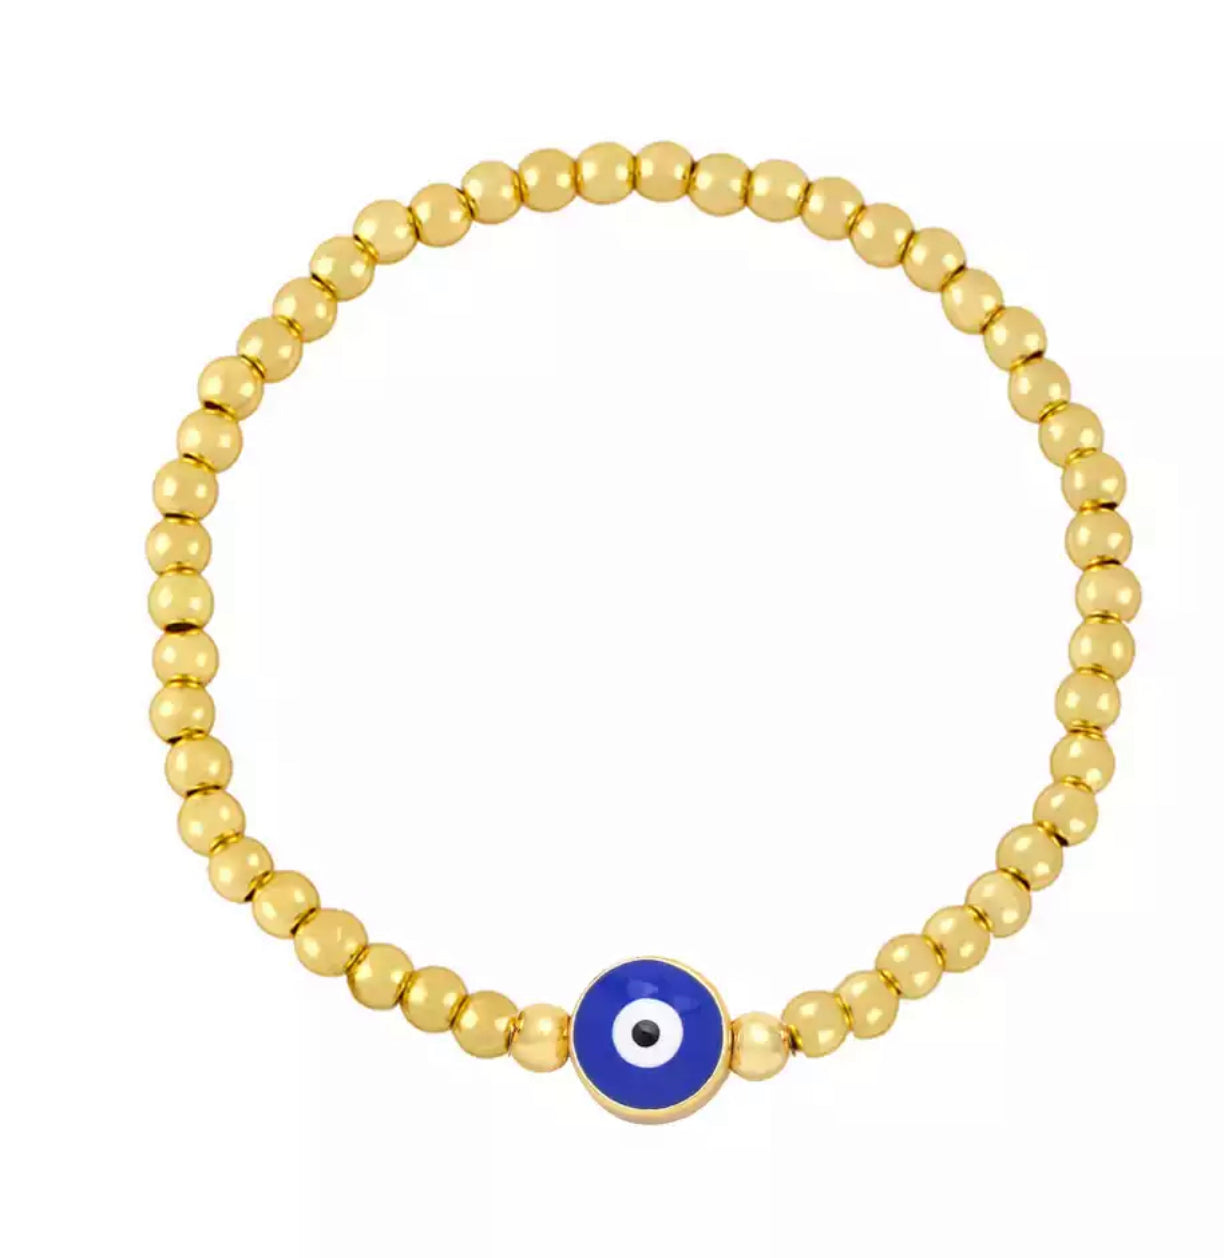 Evil Eye Bracelet, Turquoise Seed Beads Bracelet, Gold Charm